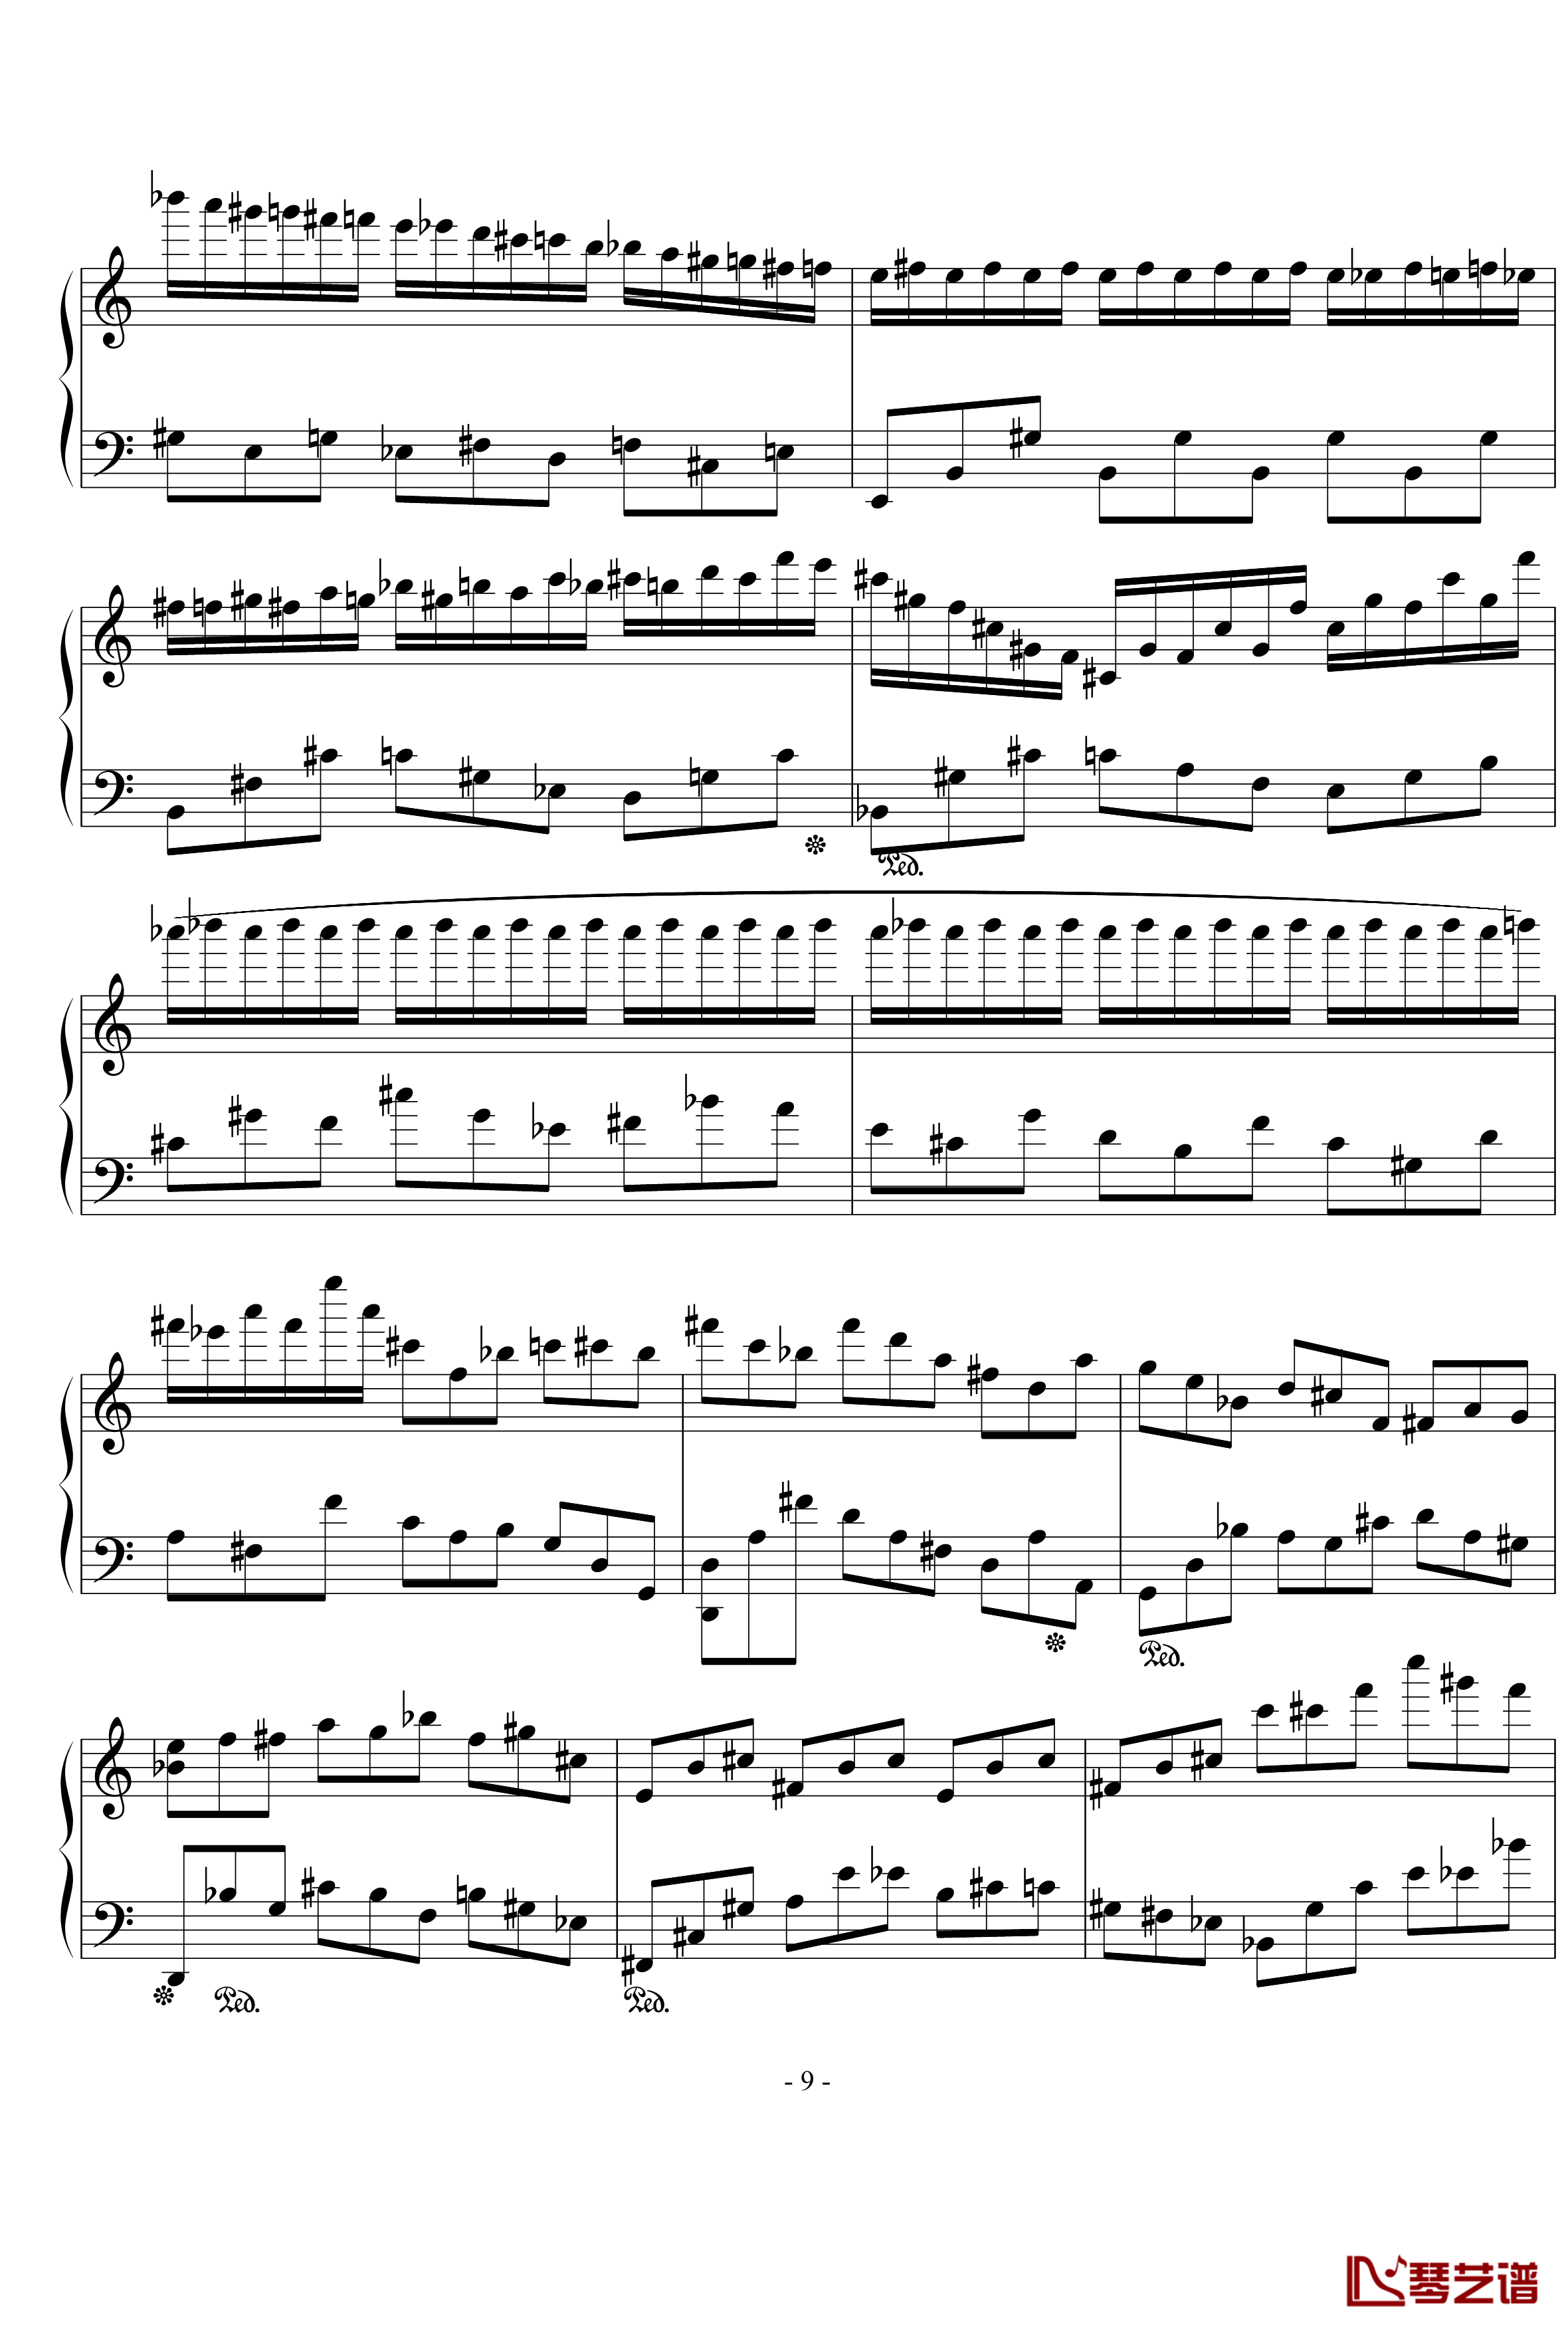 浪漫主义音乐的传统钢琴谱-幻想曲-D大调-流行追梦人9